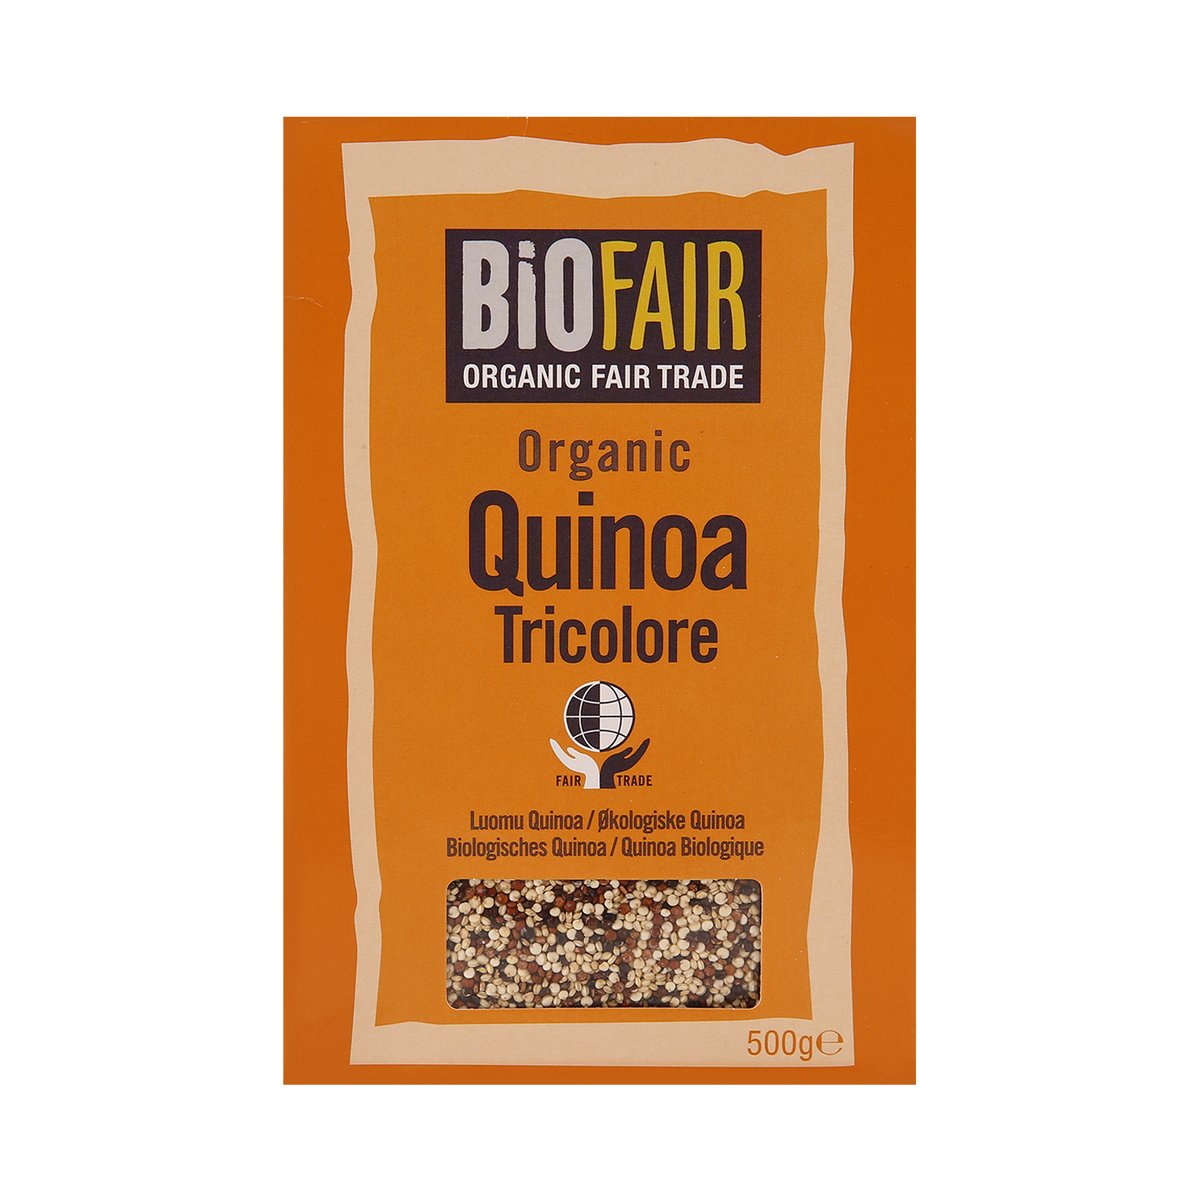 Biofair Organic Fair Trade Quinoa Tricolored 500 g